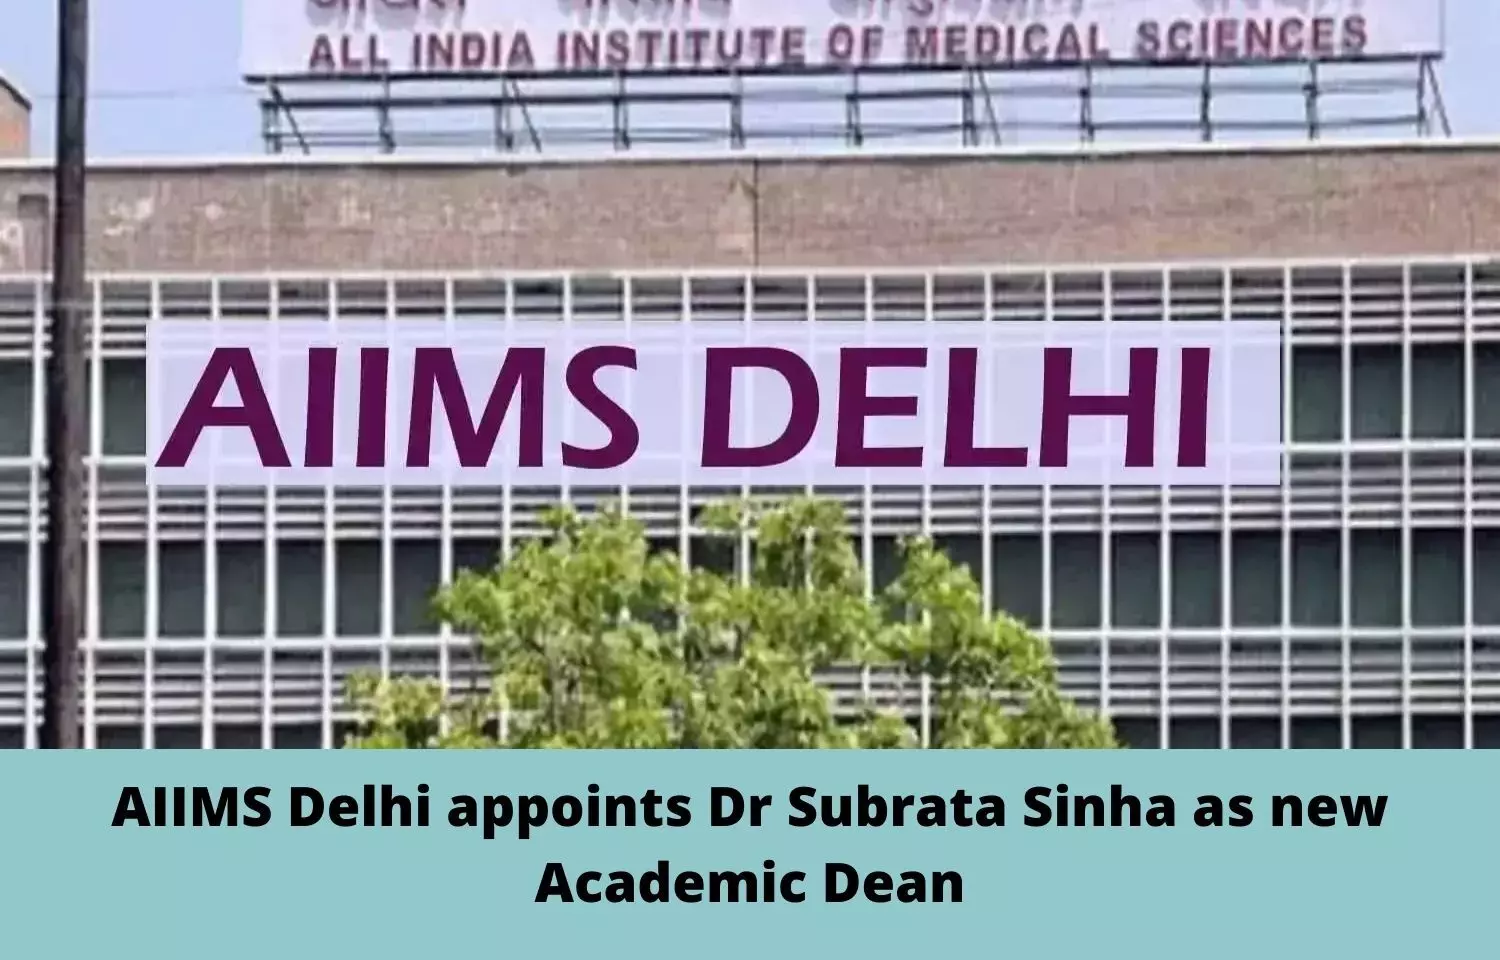 AIIMS Delhi appoints Dr Subrata Sinha as new Academic Dean